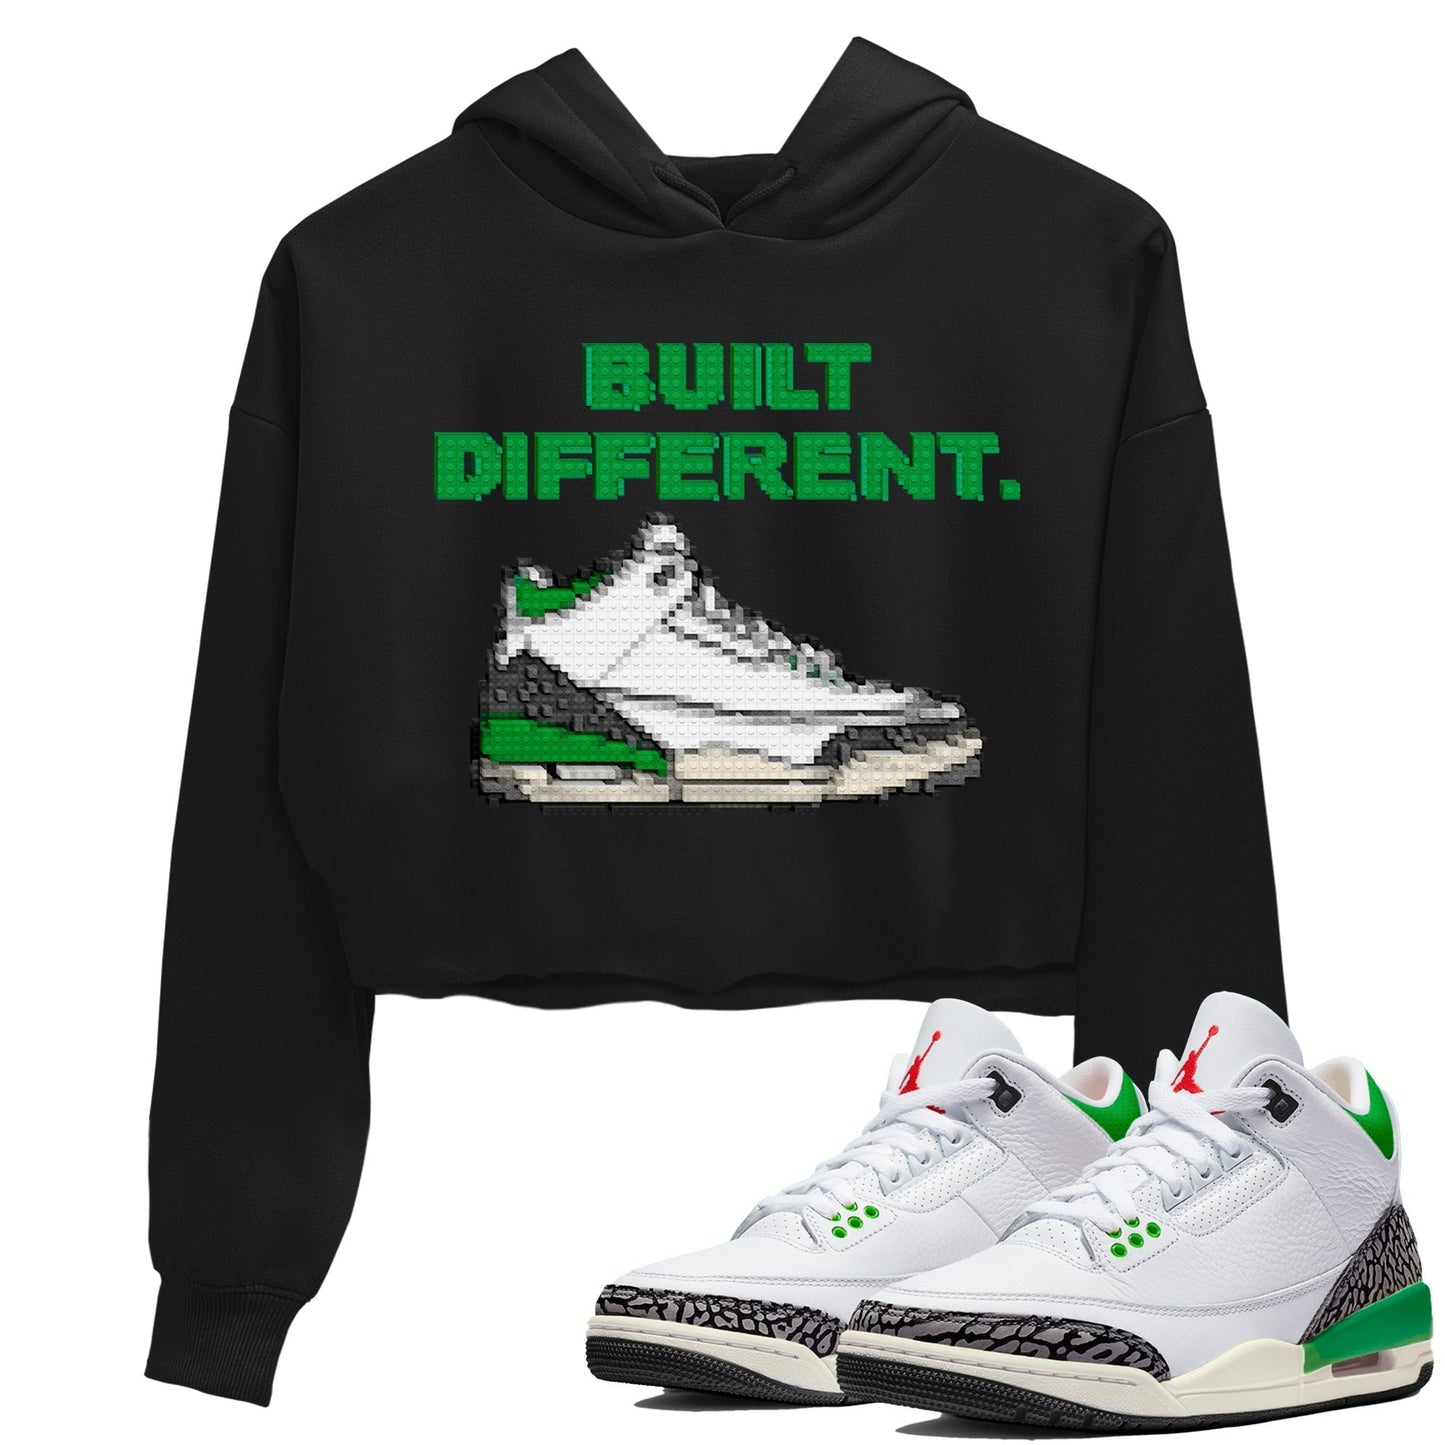 Air Jordan 3 Lucky Green Sneaker Tees Drip Gear Zone Built Different Sneaker Tees Air Jordan 3 WMNS Lucky Green Shirt Women's Shirts Black 1